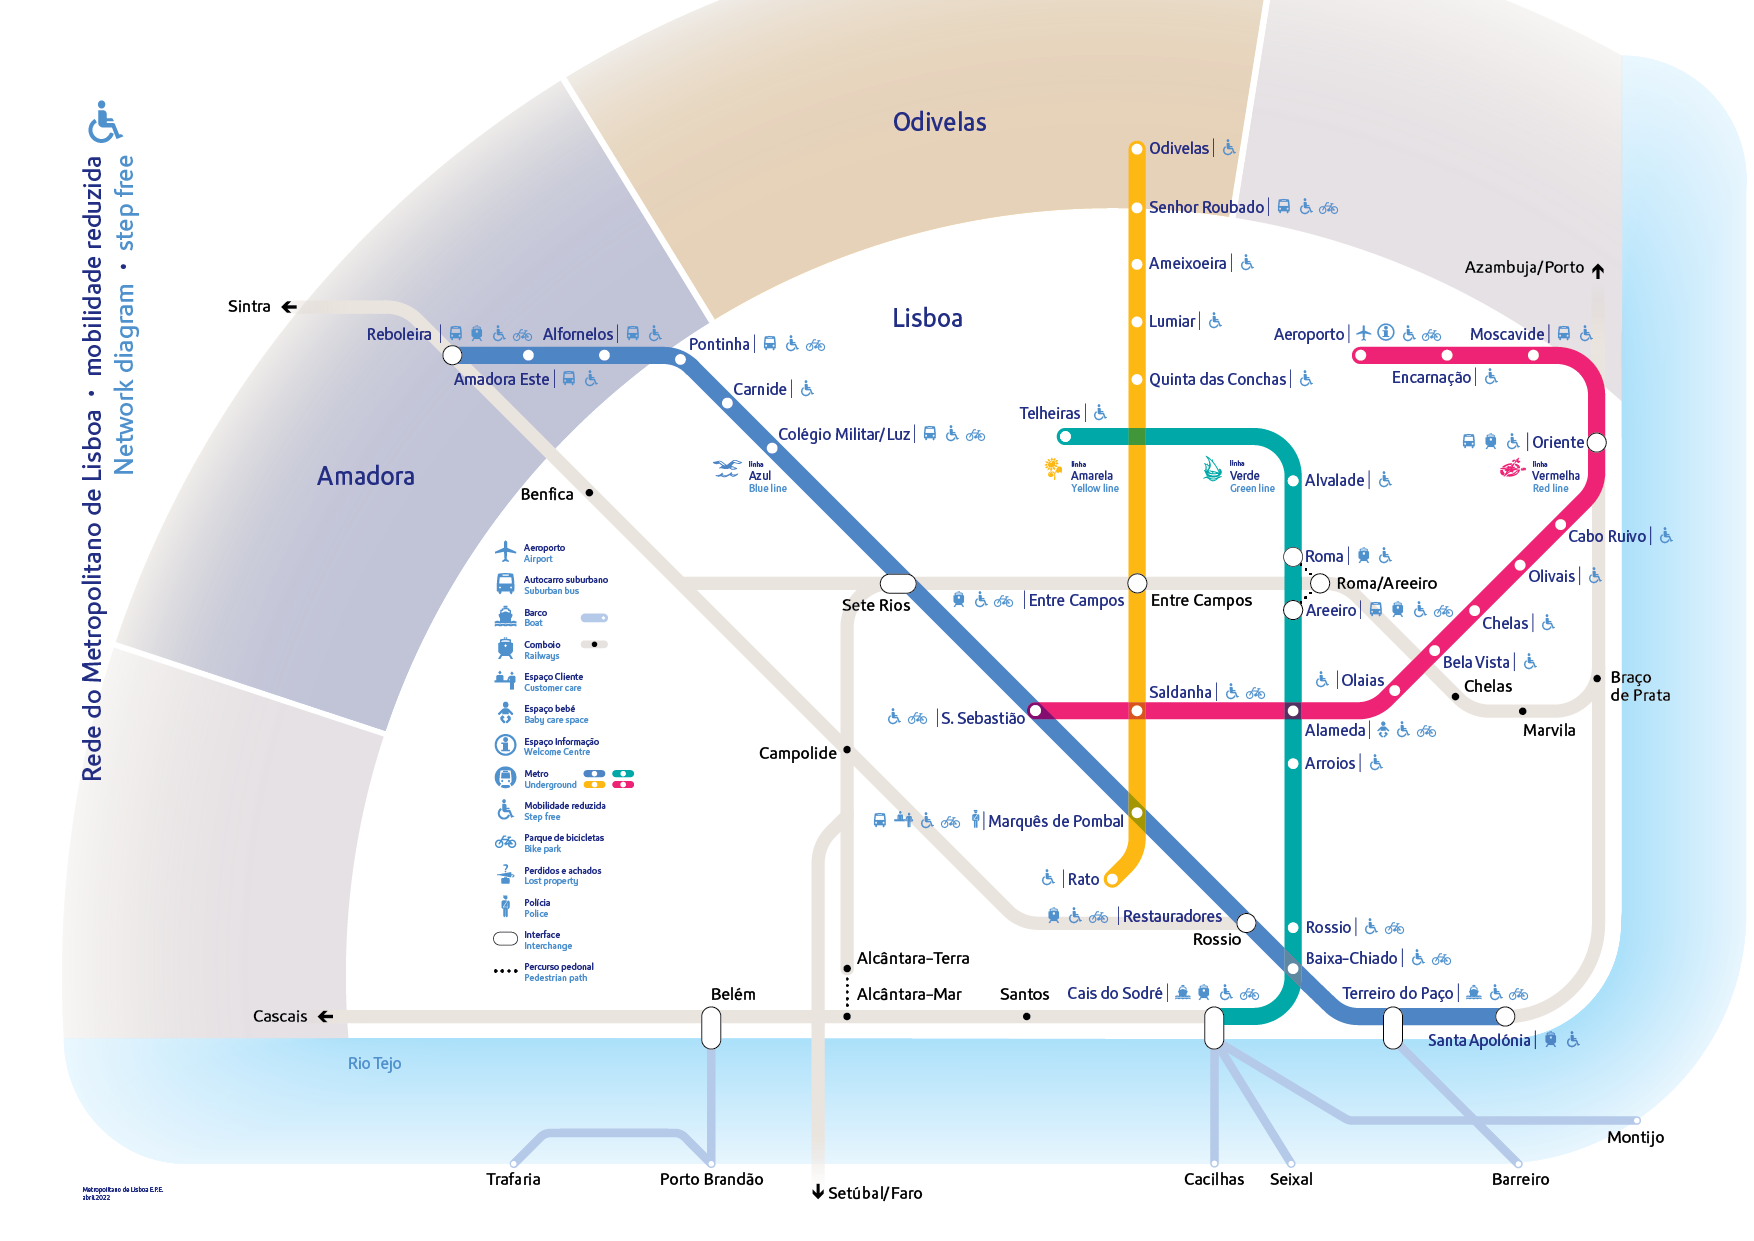 Imagem do diagrama de rede do metro que indica quais são as estações com acessibilidade